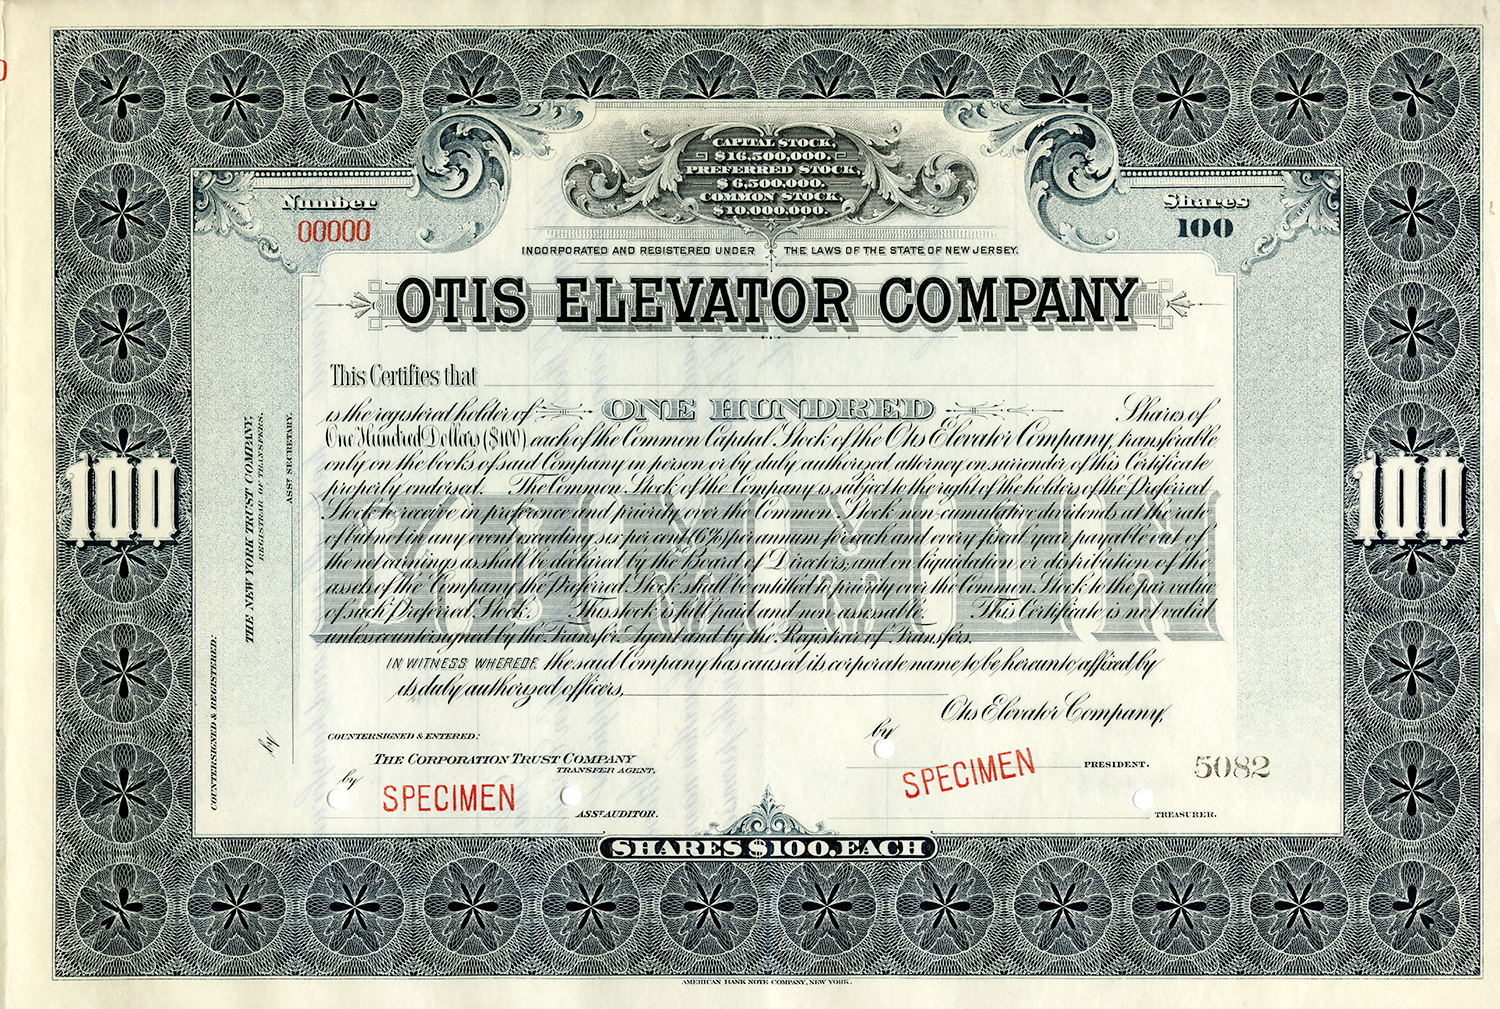 Original Otis stock certificate